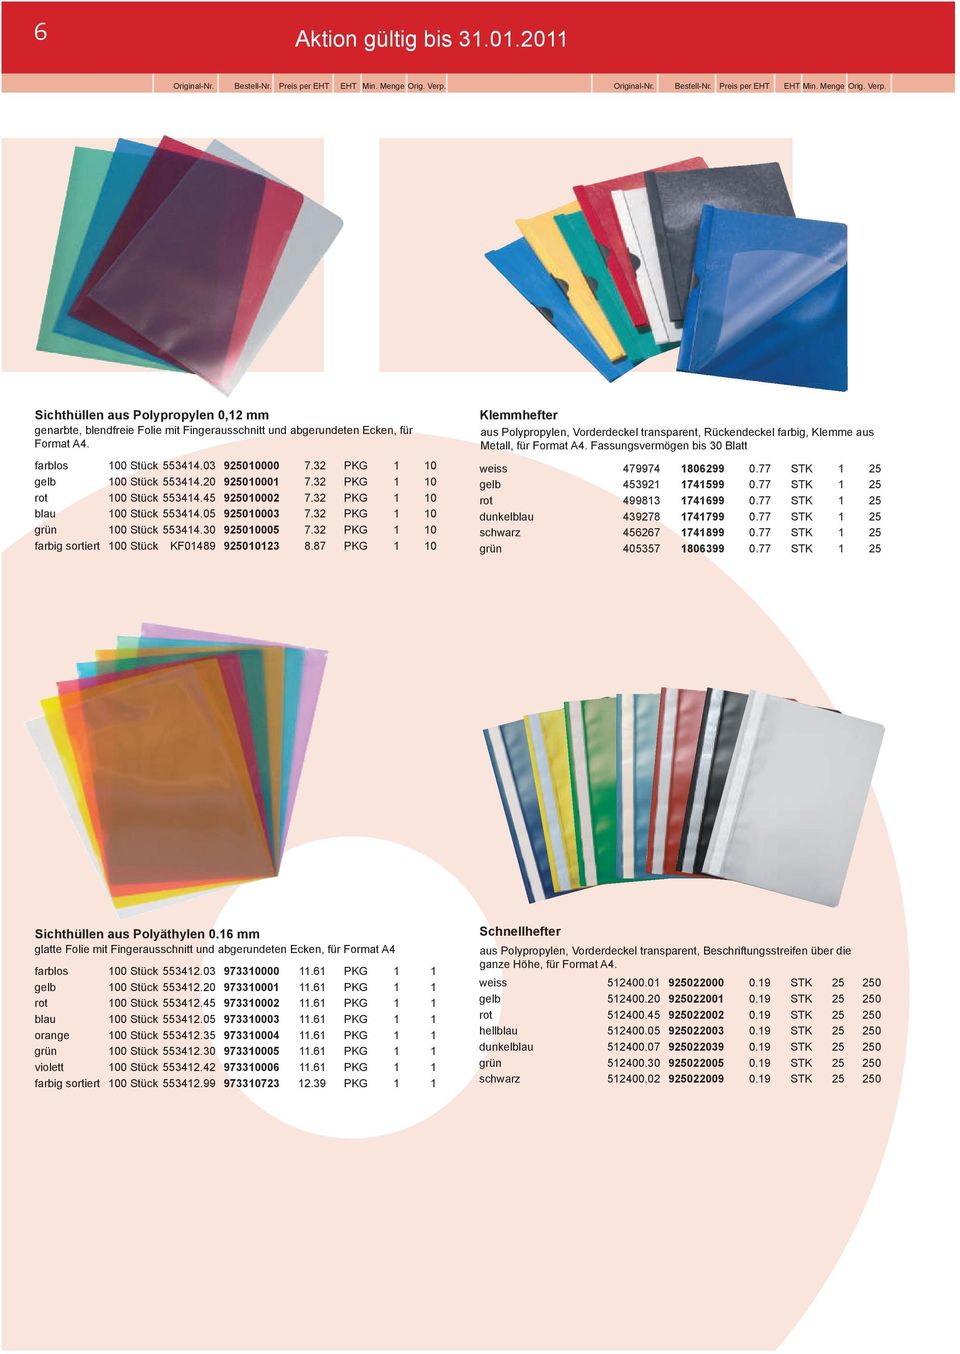 32 PKG 1 10 farbig sortiert 100 Stück KF01489 925010123 8.87 PKG 1 10 Klemmhefter aus Polypropylen, Vorderdeckel transparent, Rückendeckel farbig, Klemme aus Metall, für Format A4.